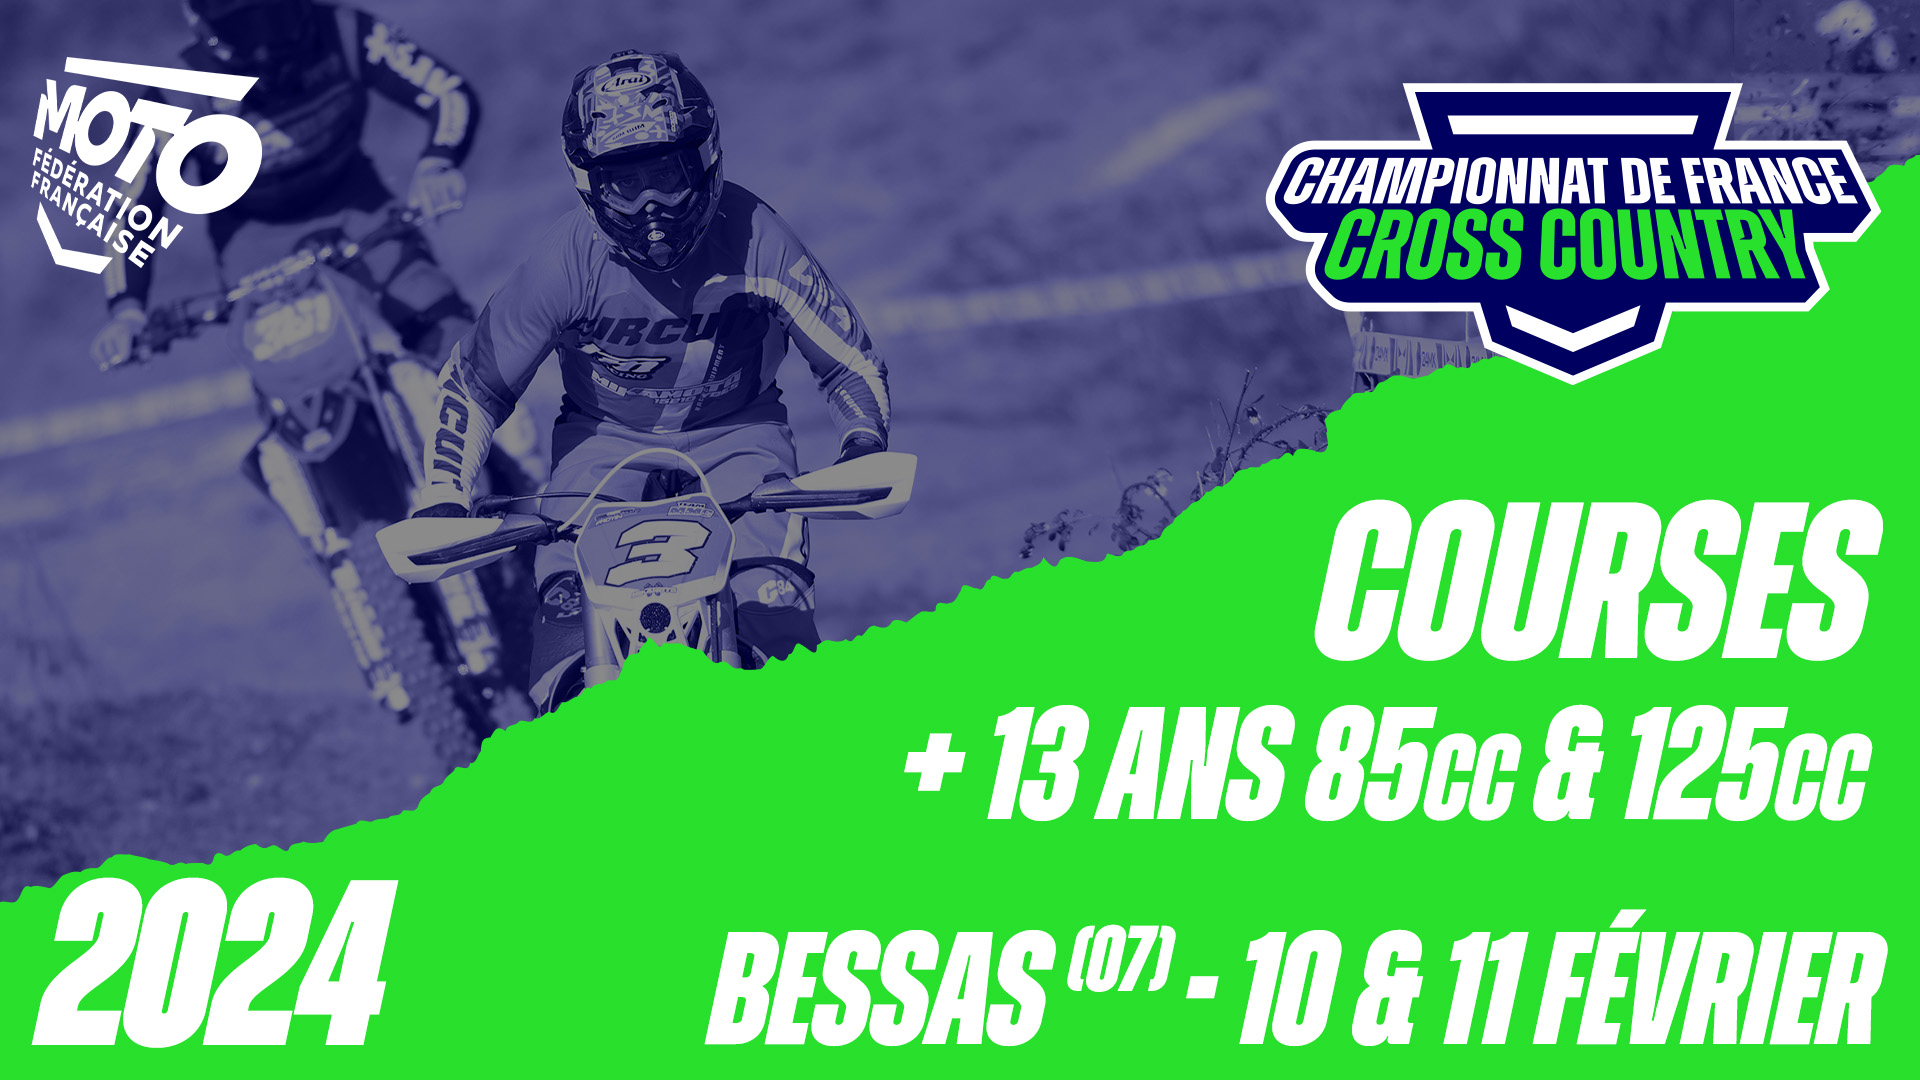 Courses +13 ans 85cc & 125cc – Bessas